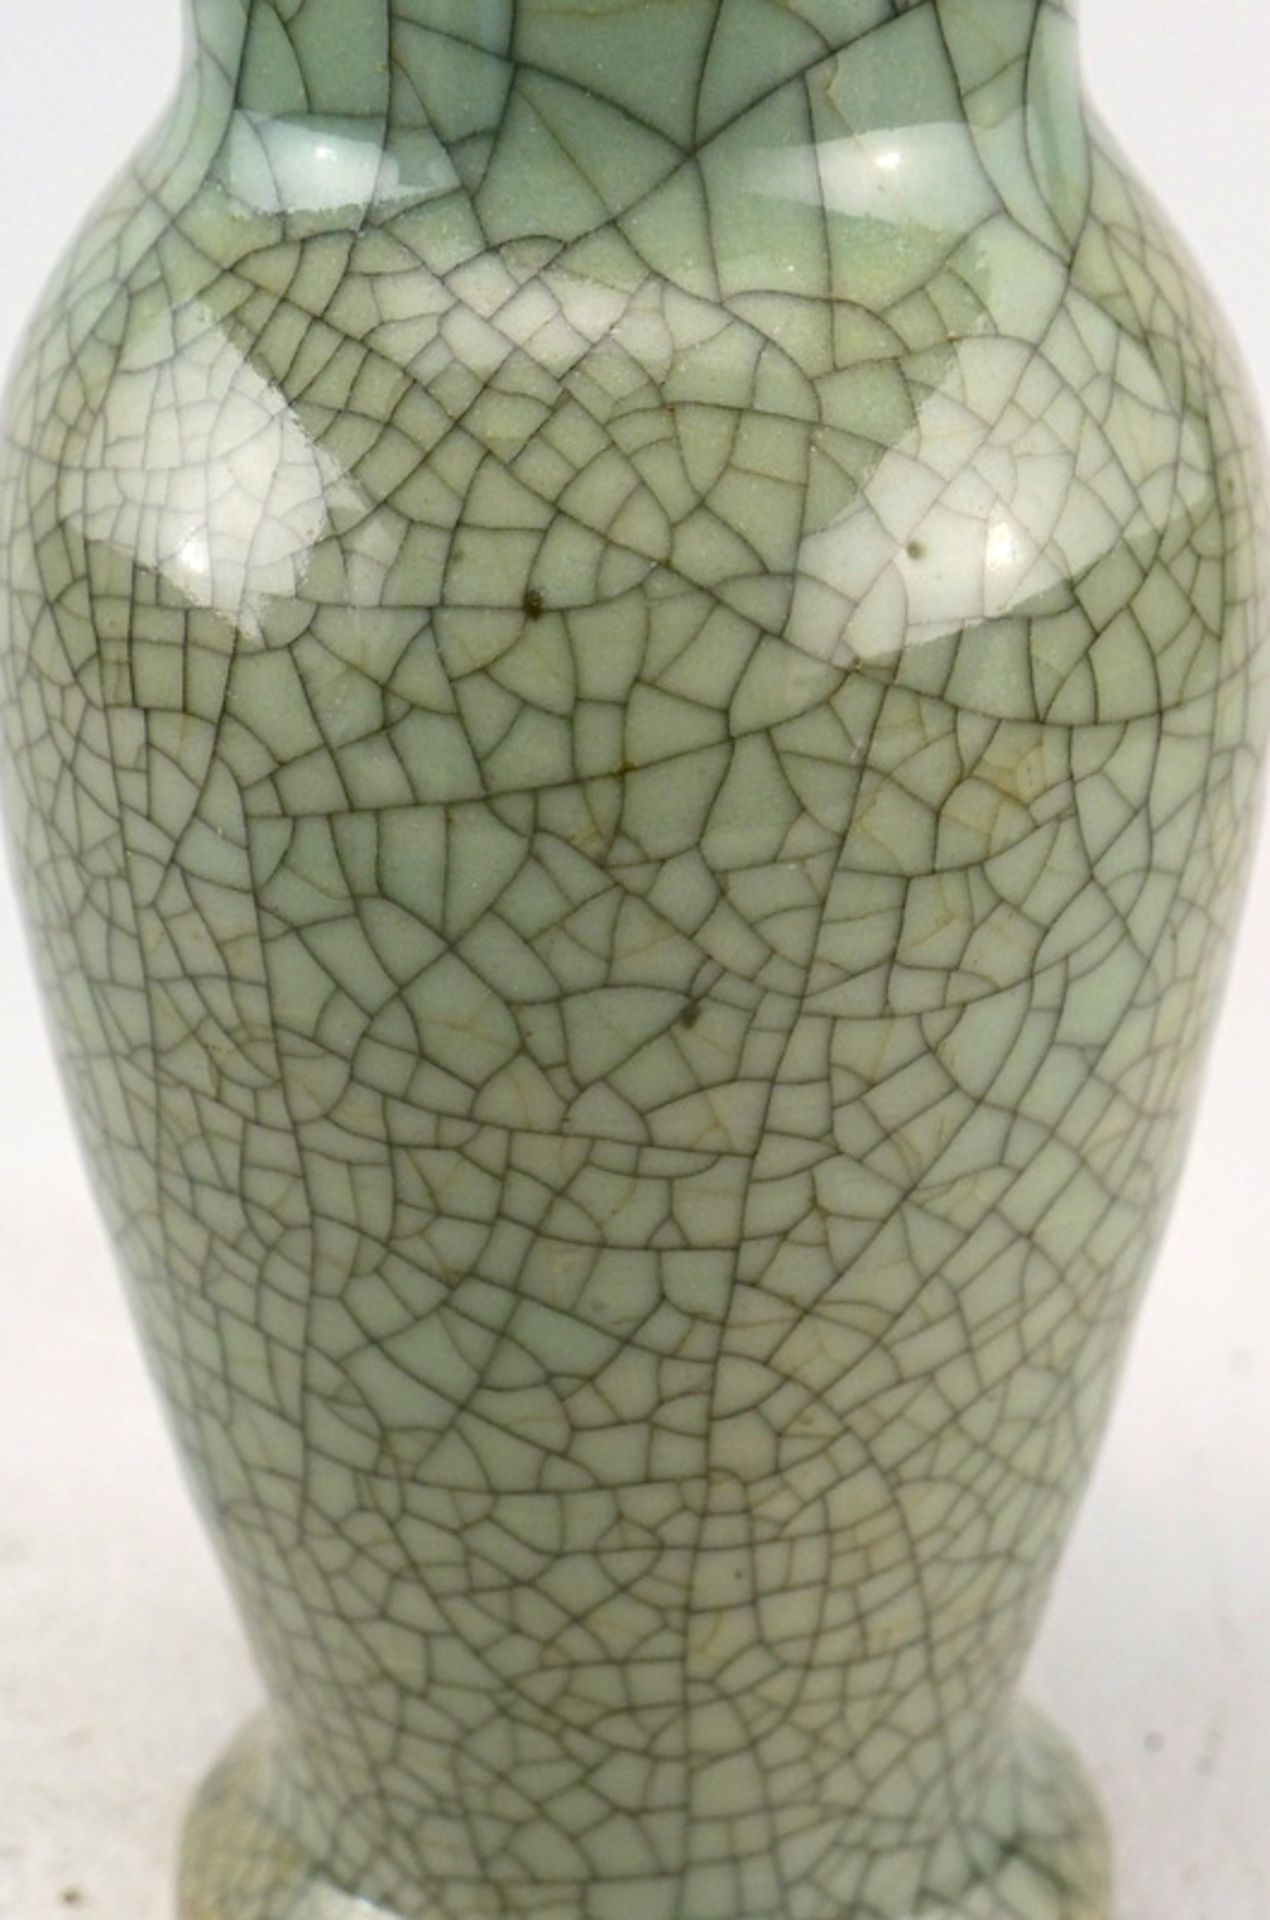 Vase mit dichten Krakelée, China, 19./20. Jhd. - Image 2 of 3